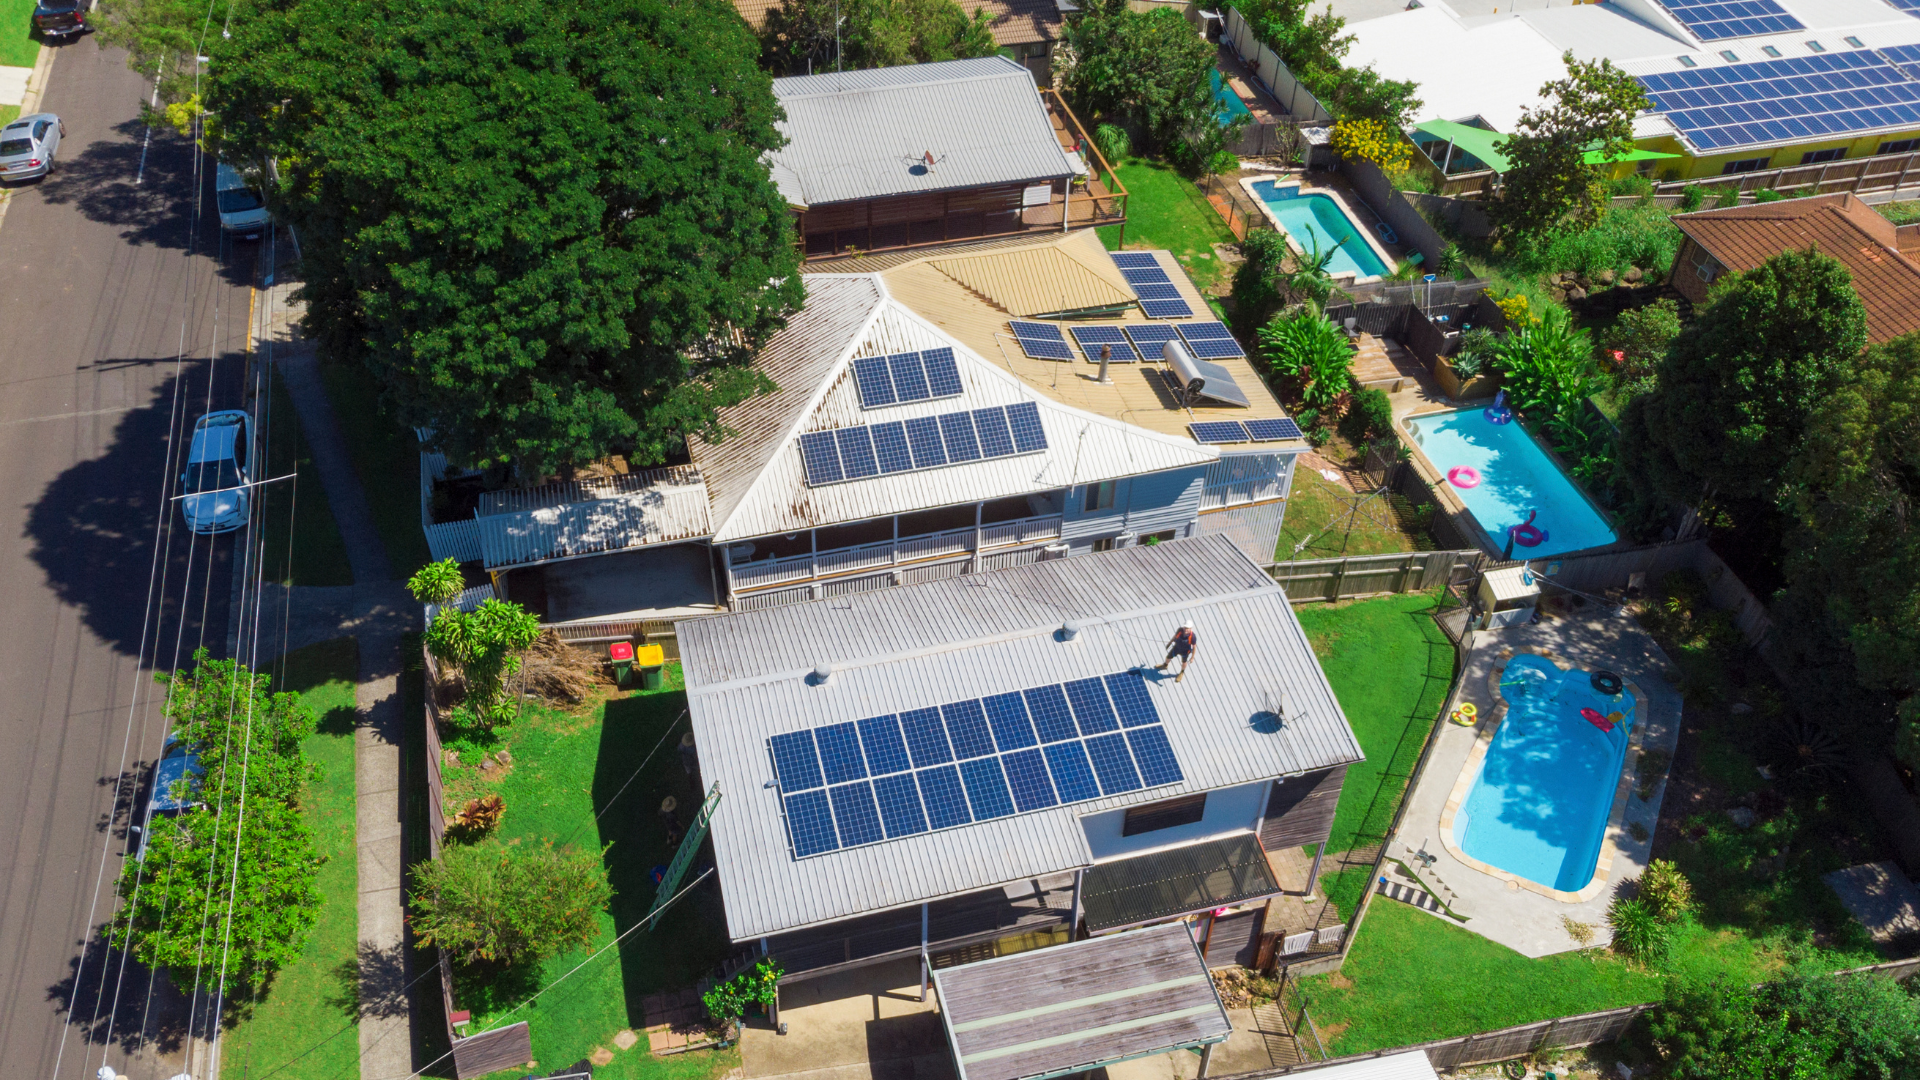 Coalición Queremos Sol urge al gobierno acelerar la recuperación inmediata y la transición hacia la energía solar en techos